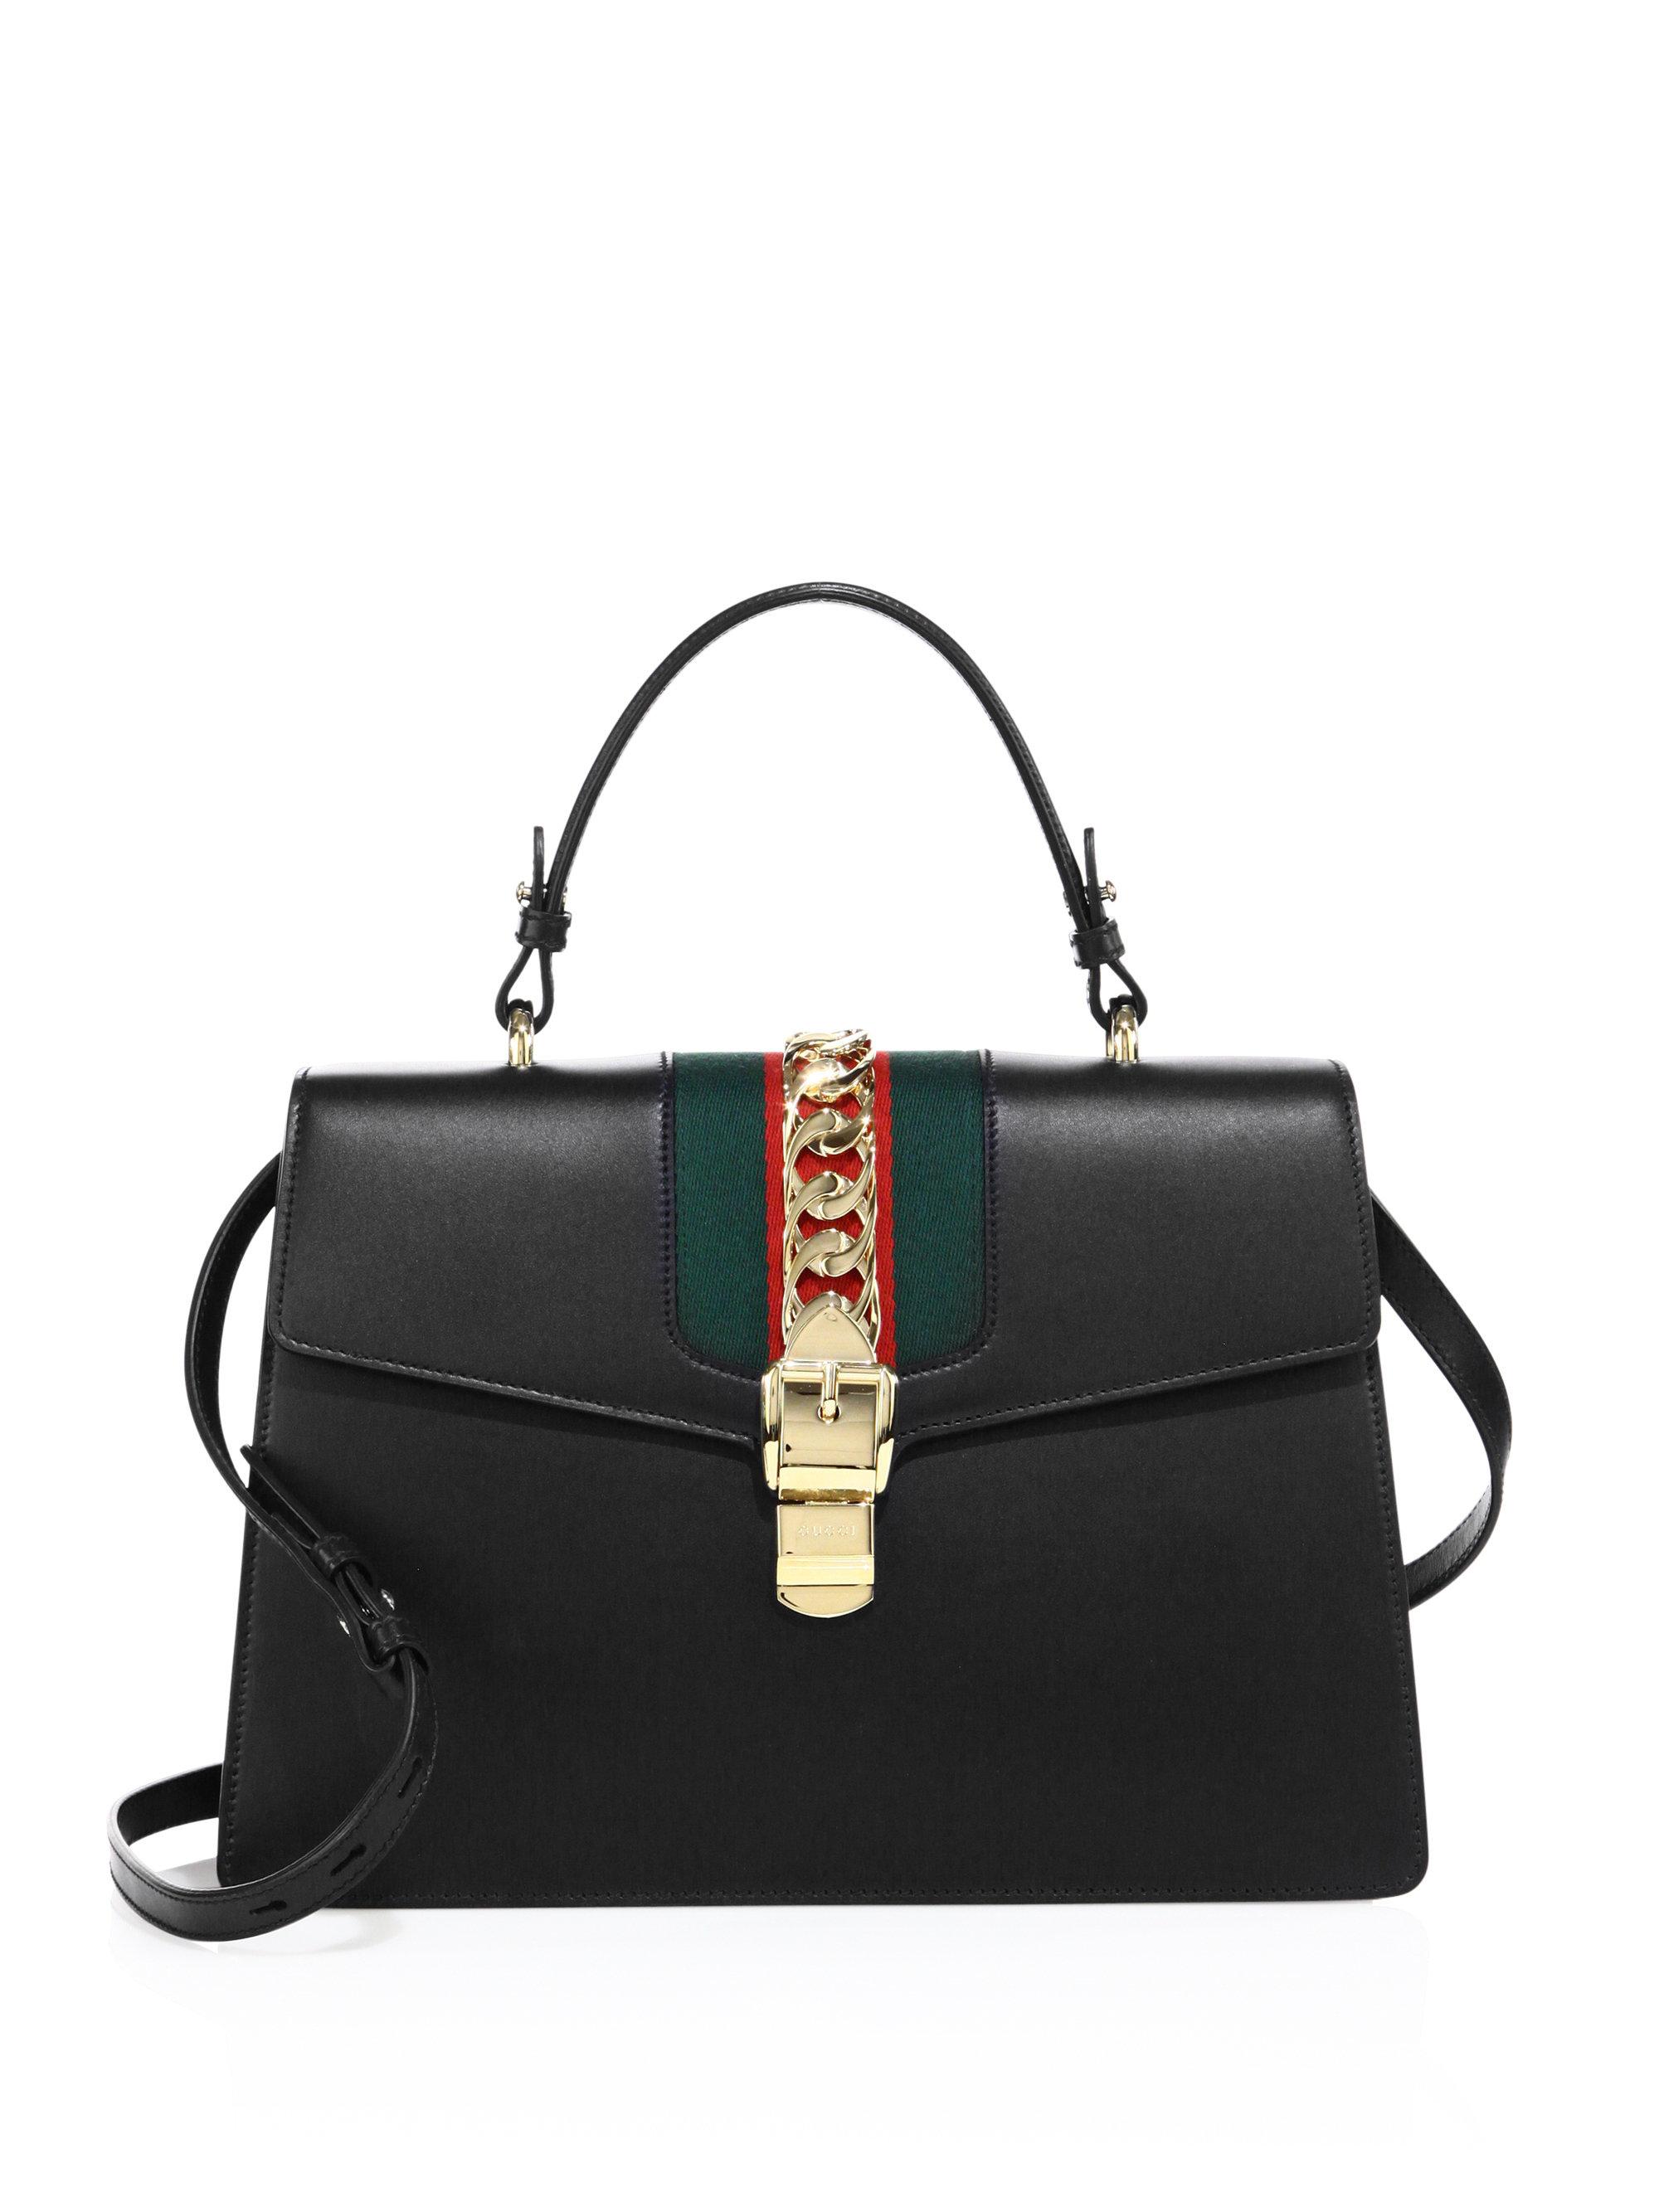 Gucci Sylvie Large Leather Shoulder Bag | Lyst